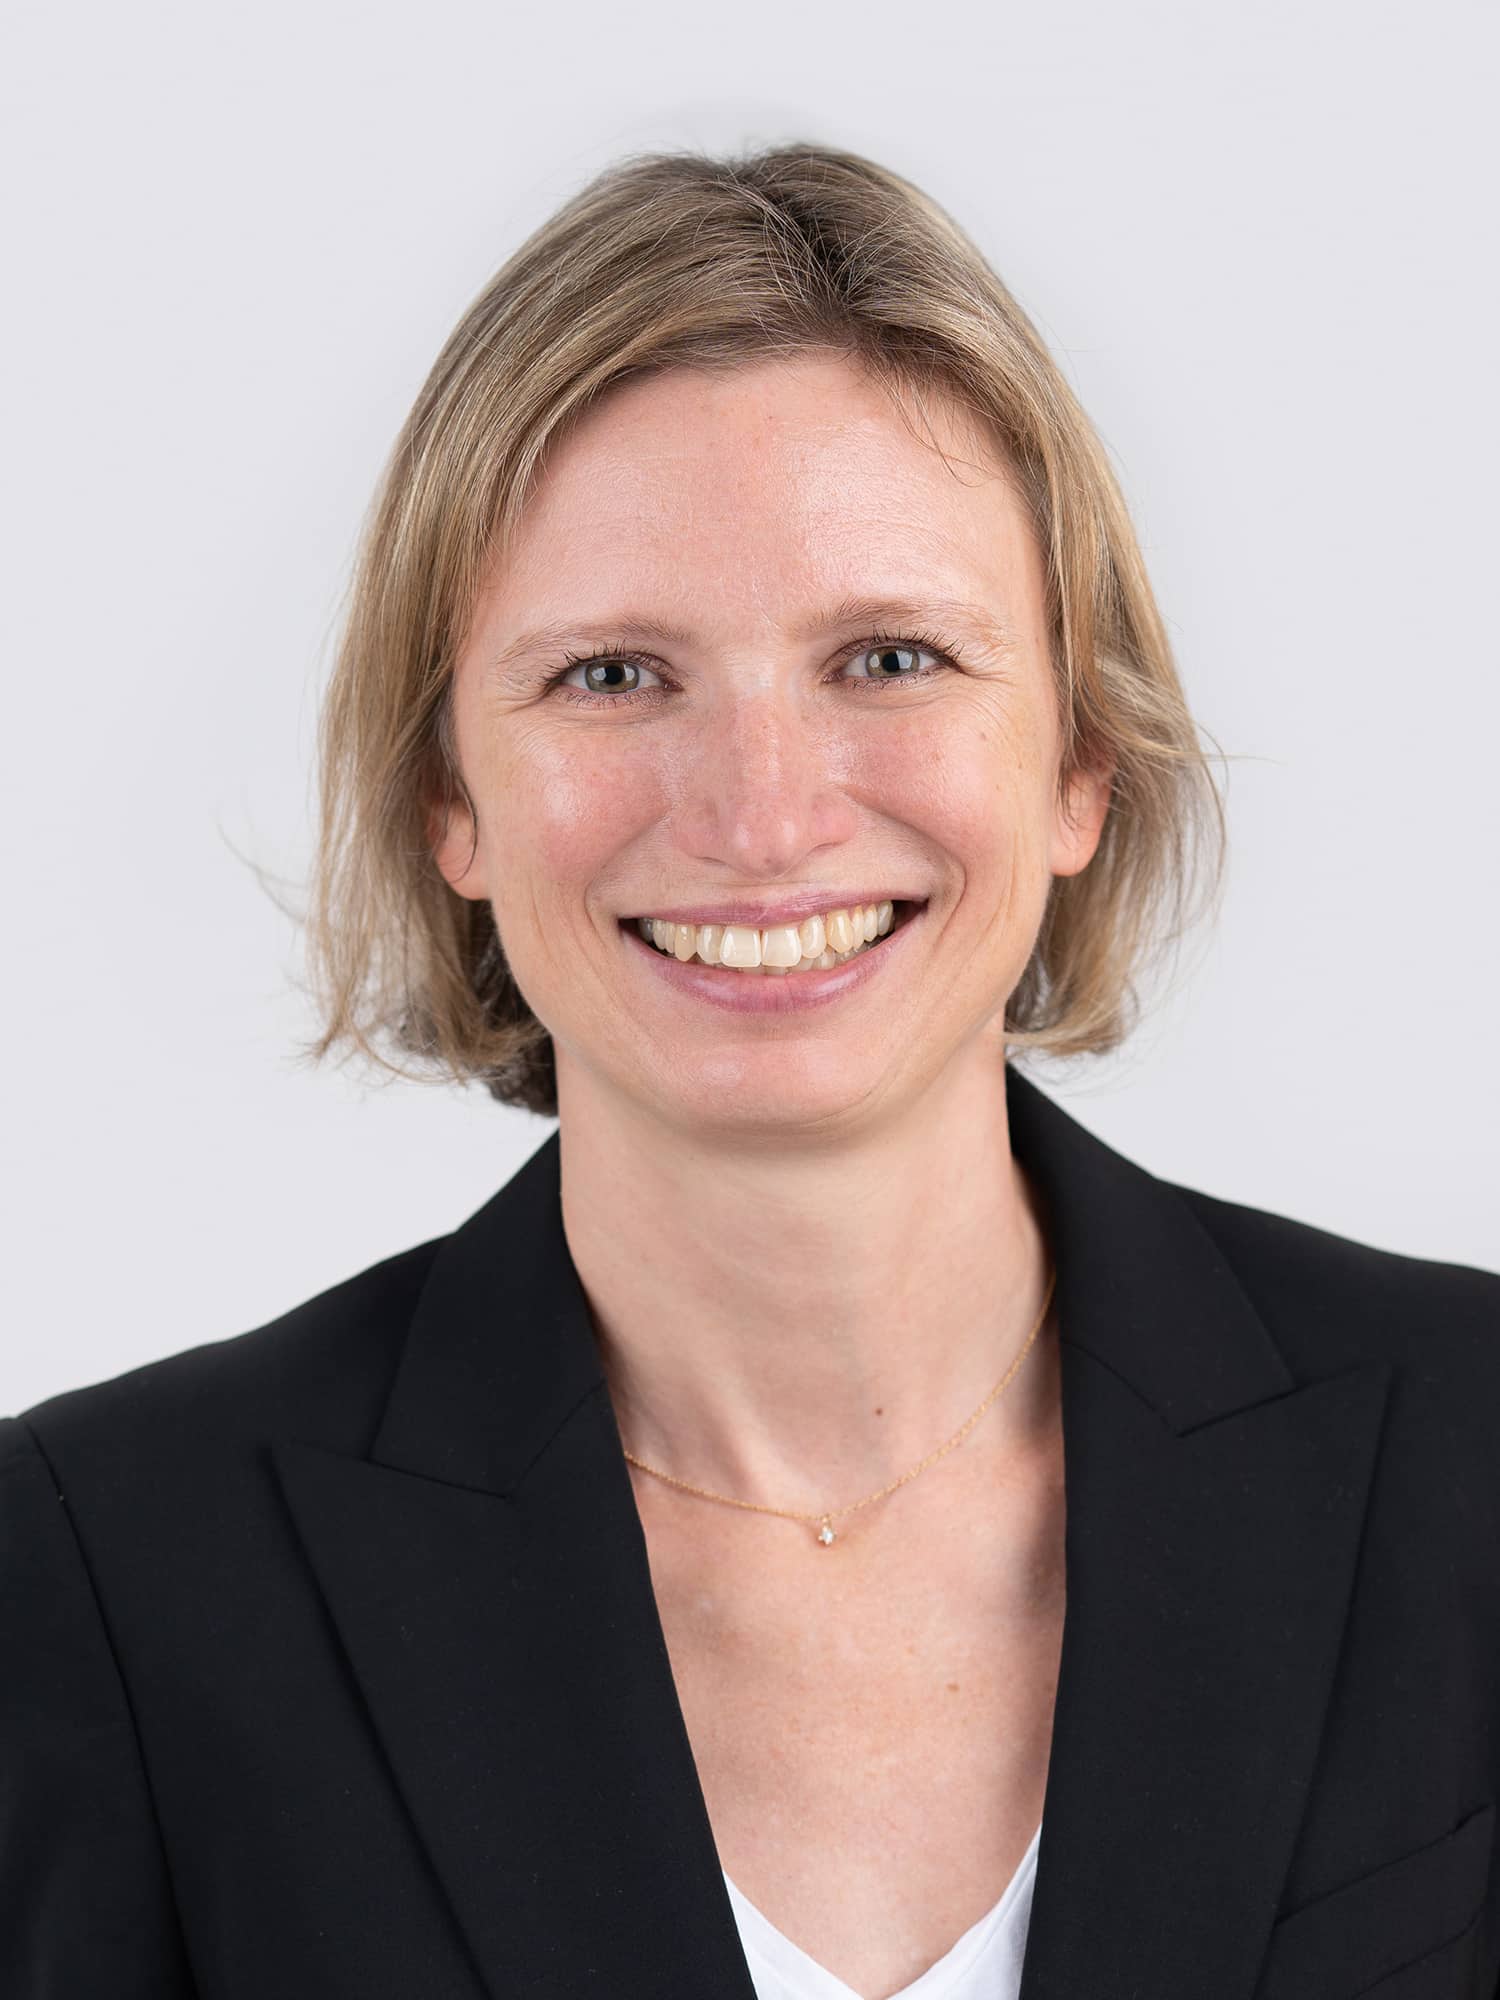 PD Dr. med. Erika Jung-Ulbrich